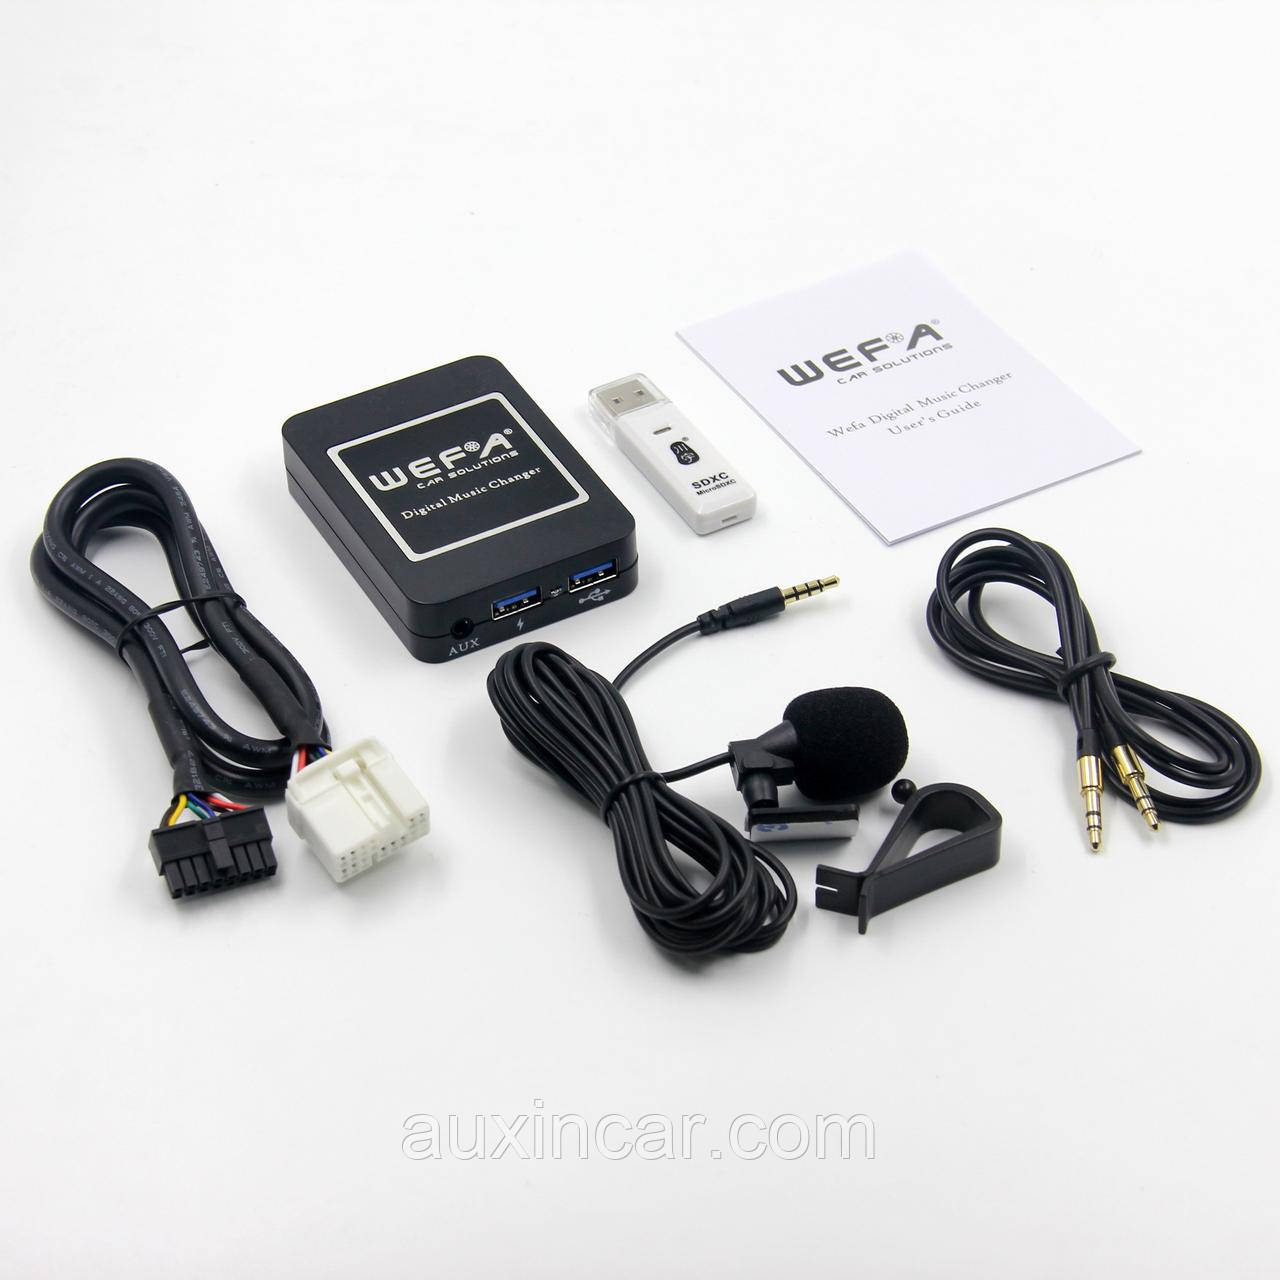 Емулятор сд чийнджера Wefa WF-606 Bluetooth/MP3/USB/AUX для Suzuki 14pins PACR, фото 1